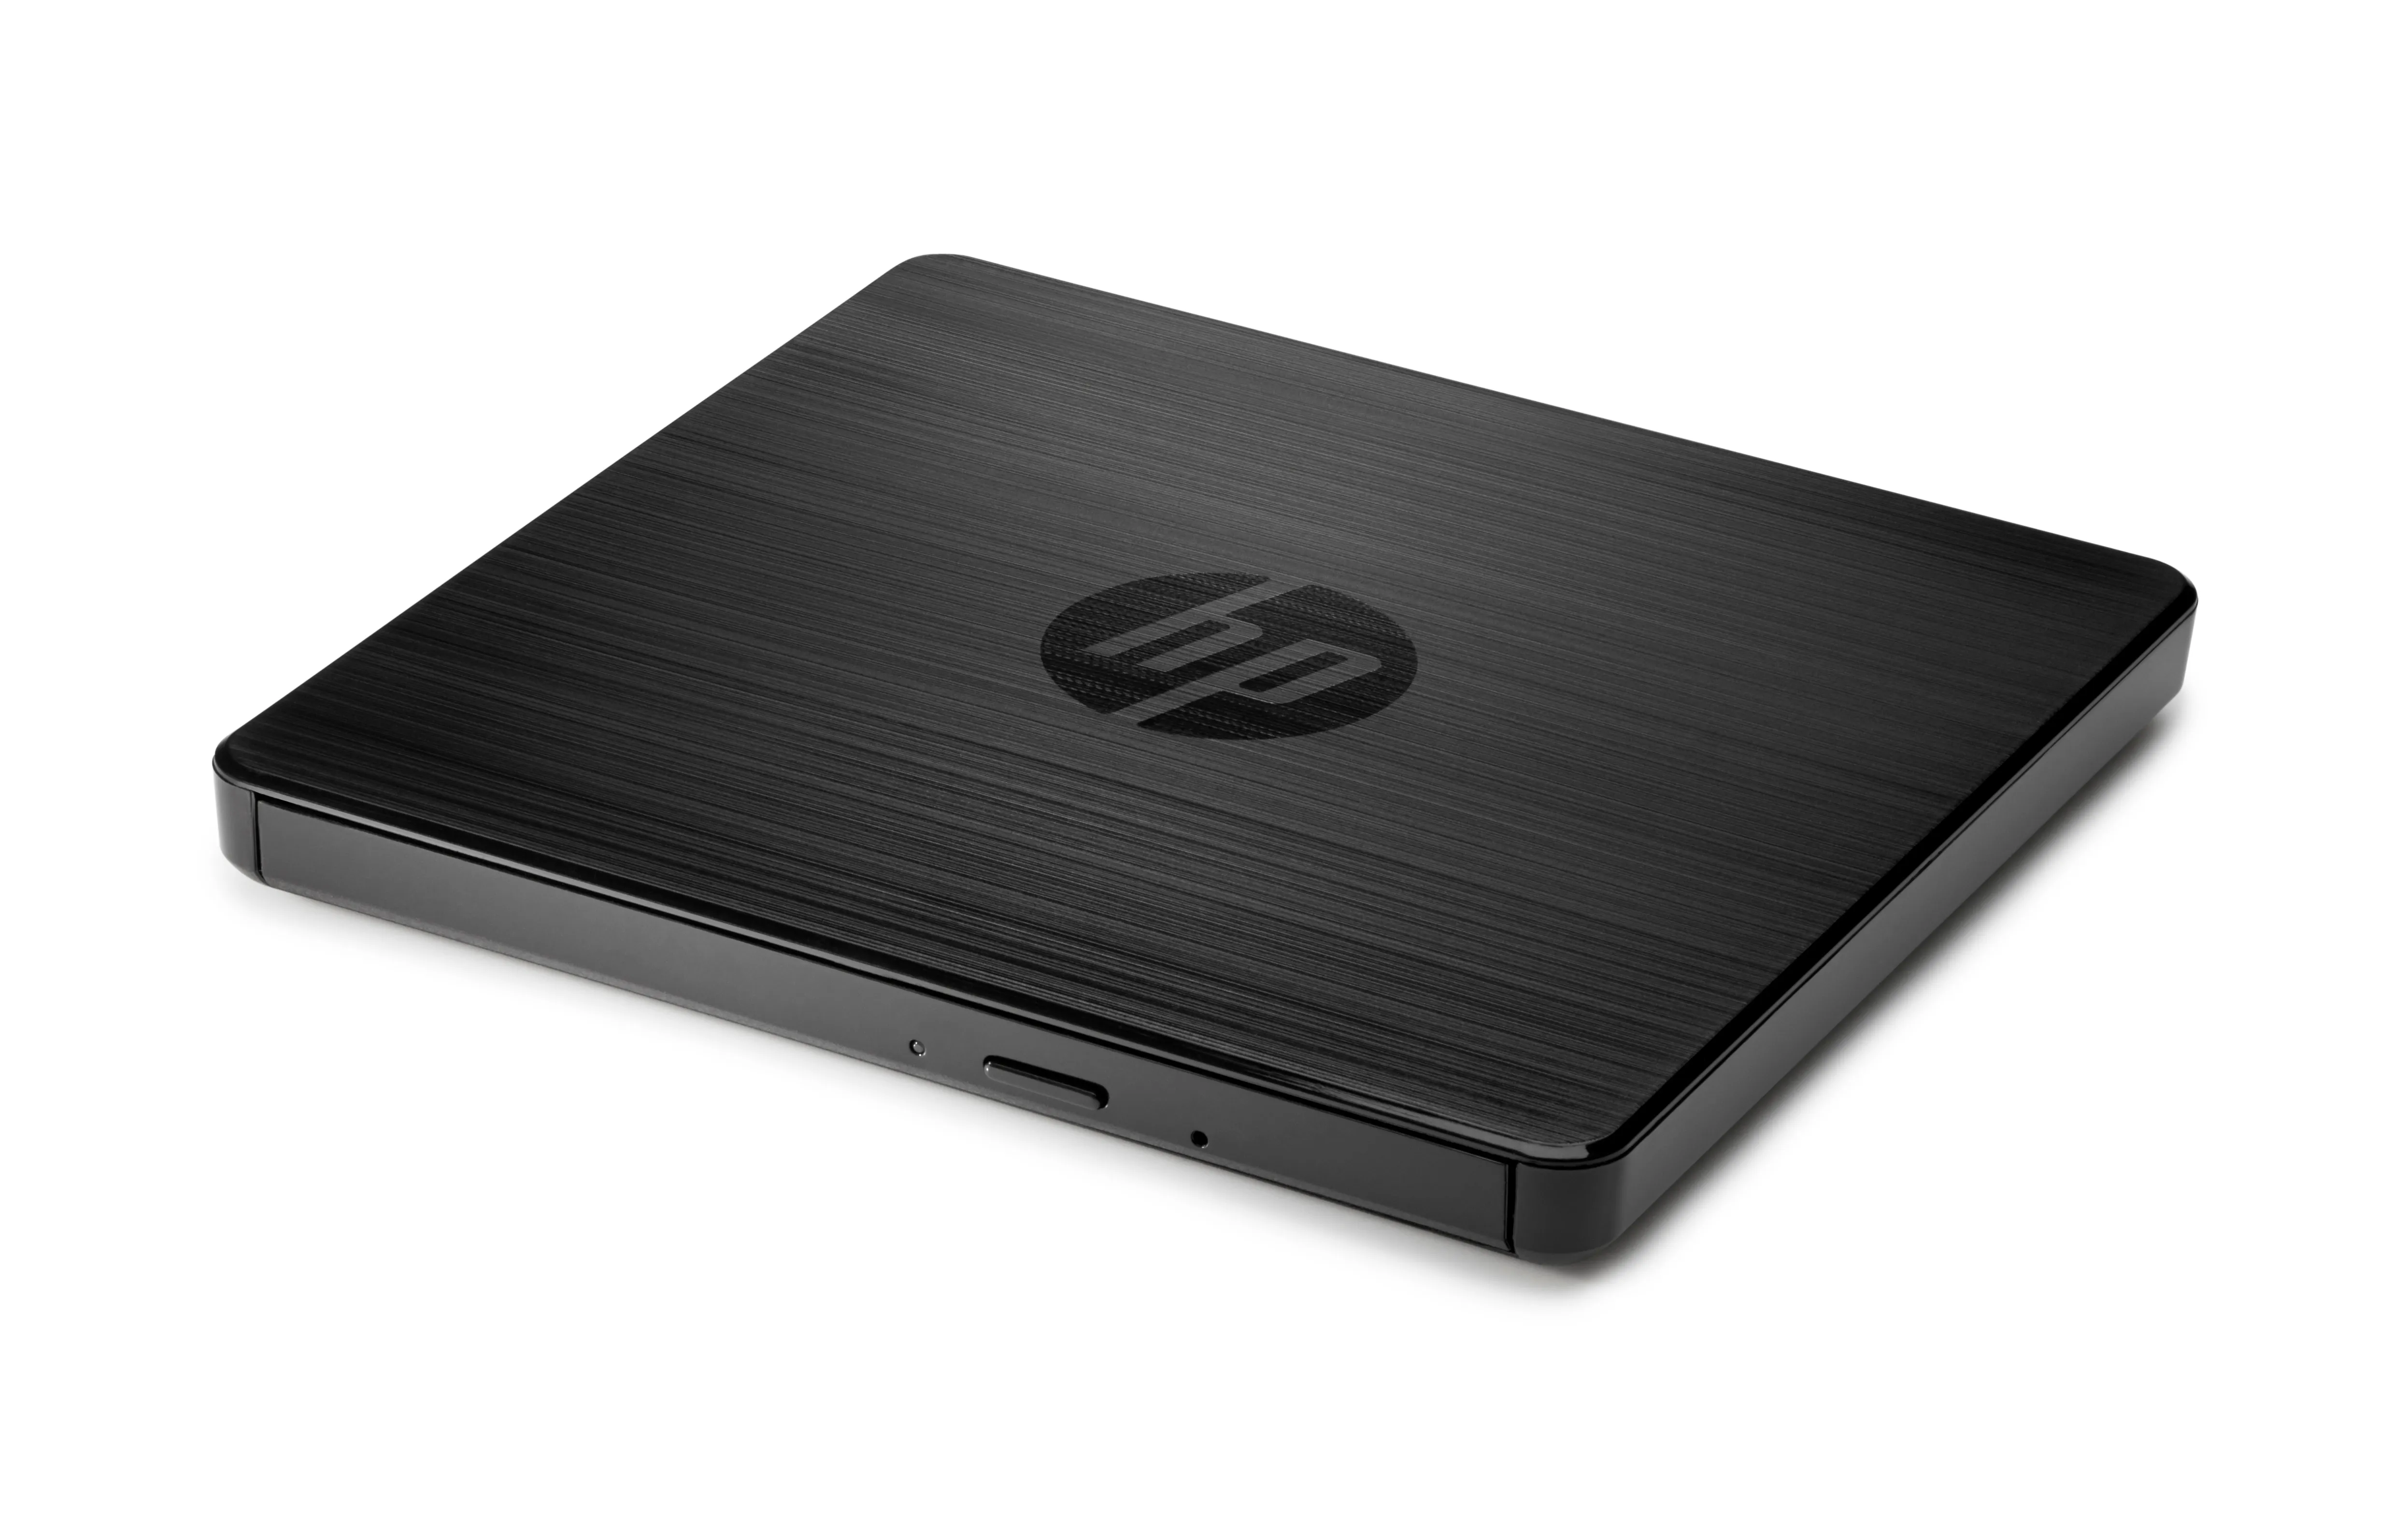 Vente HP USB External DVDRW Drive PROJEKT Retail HP au meilleur prix - visuel 4